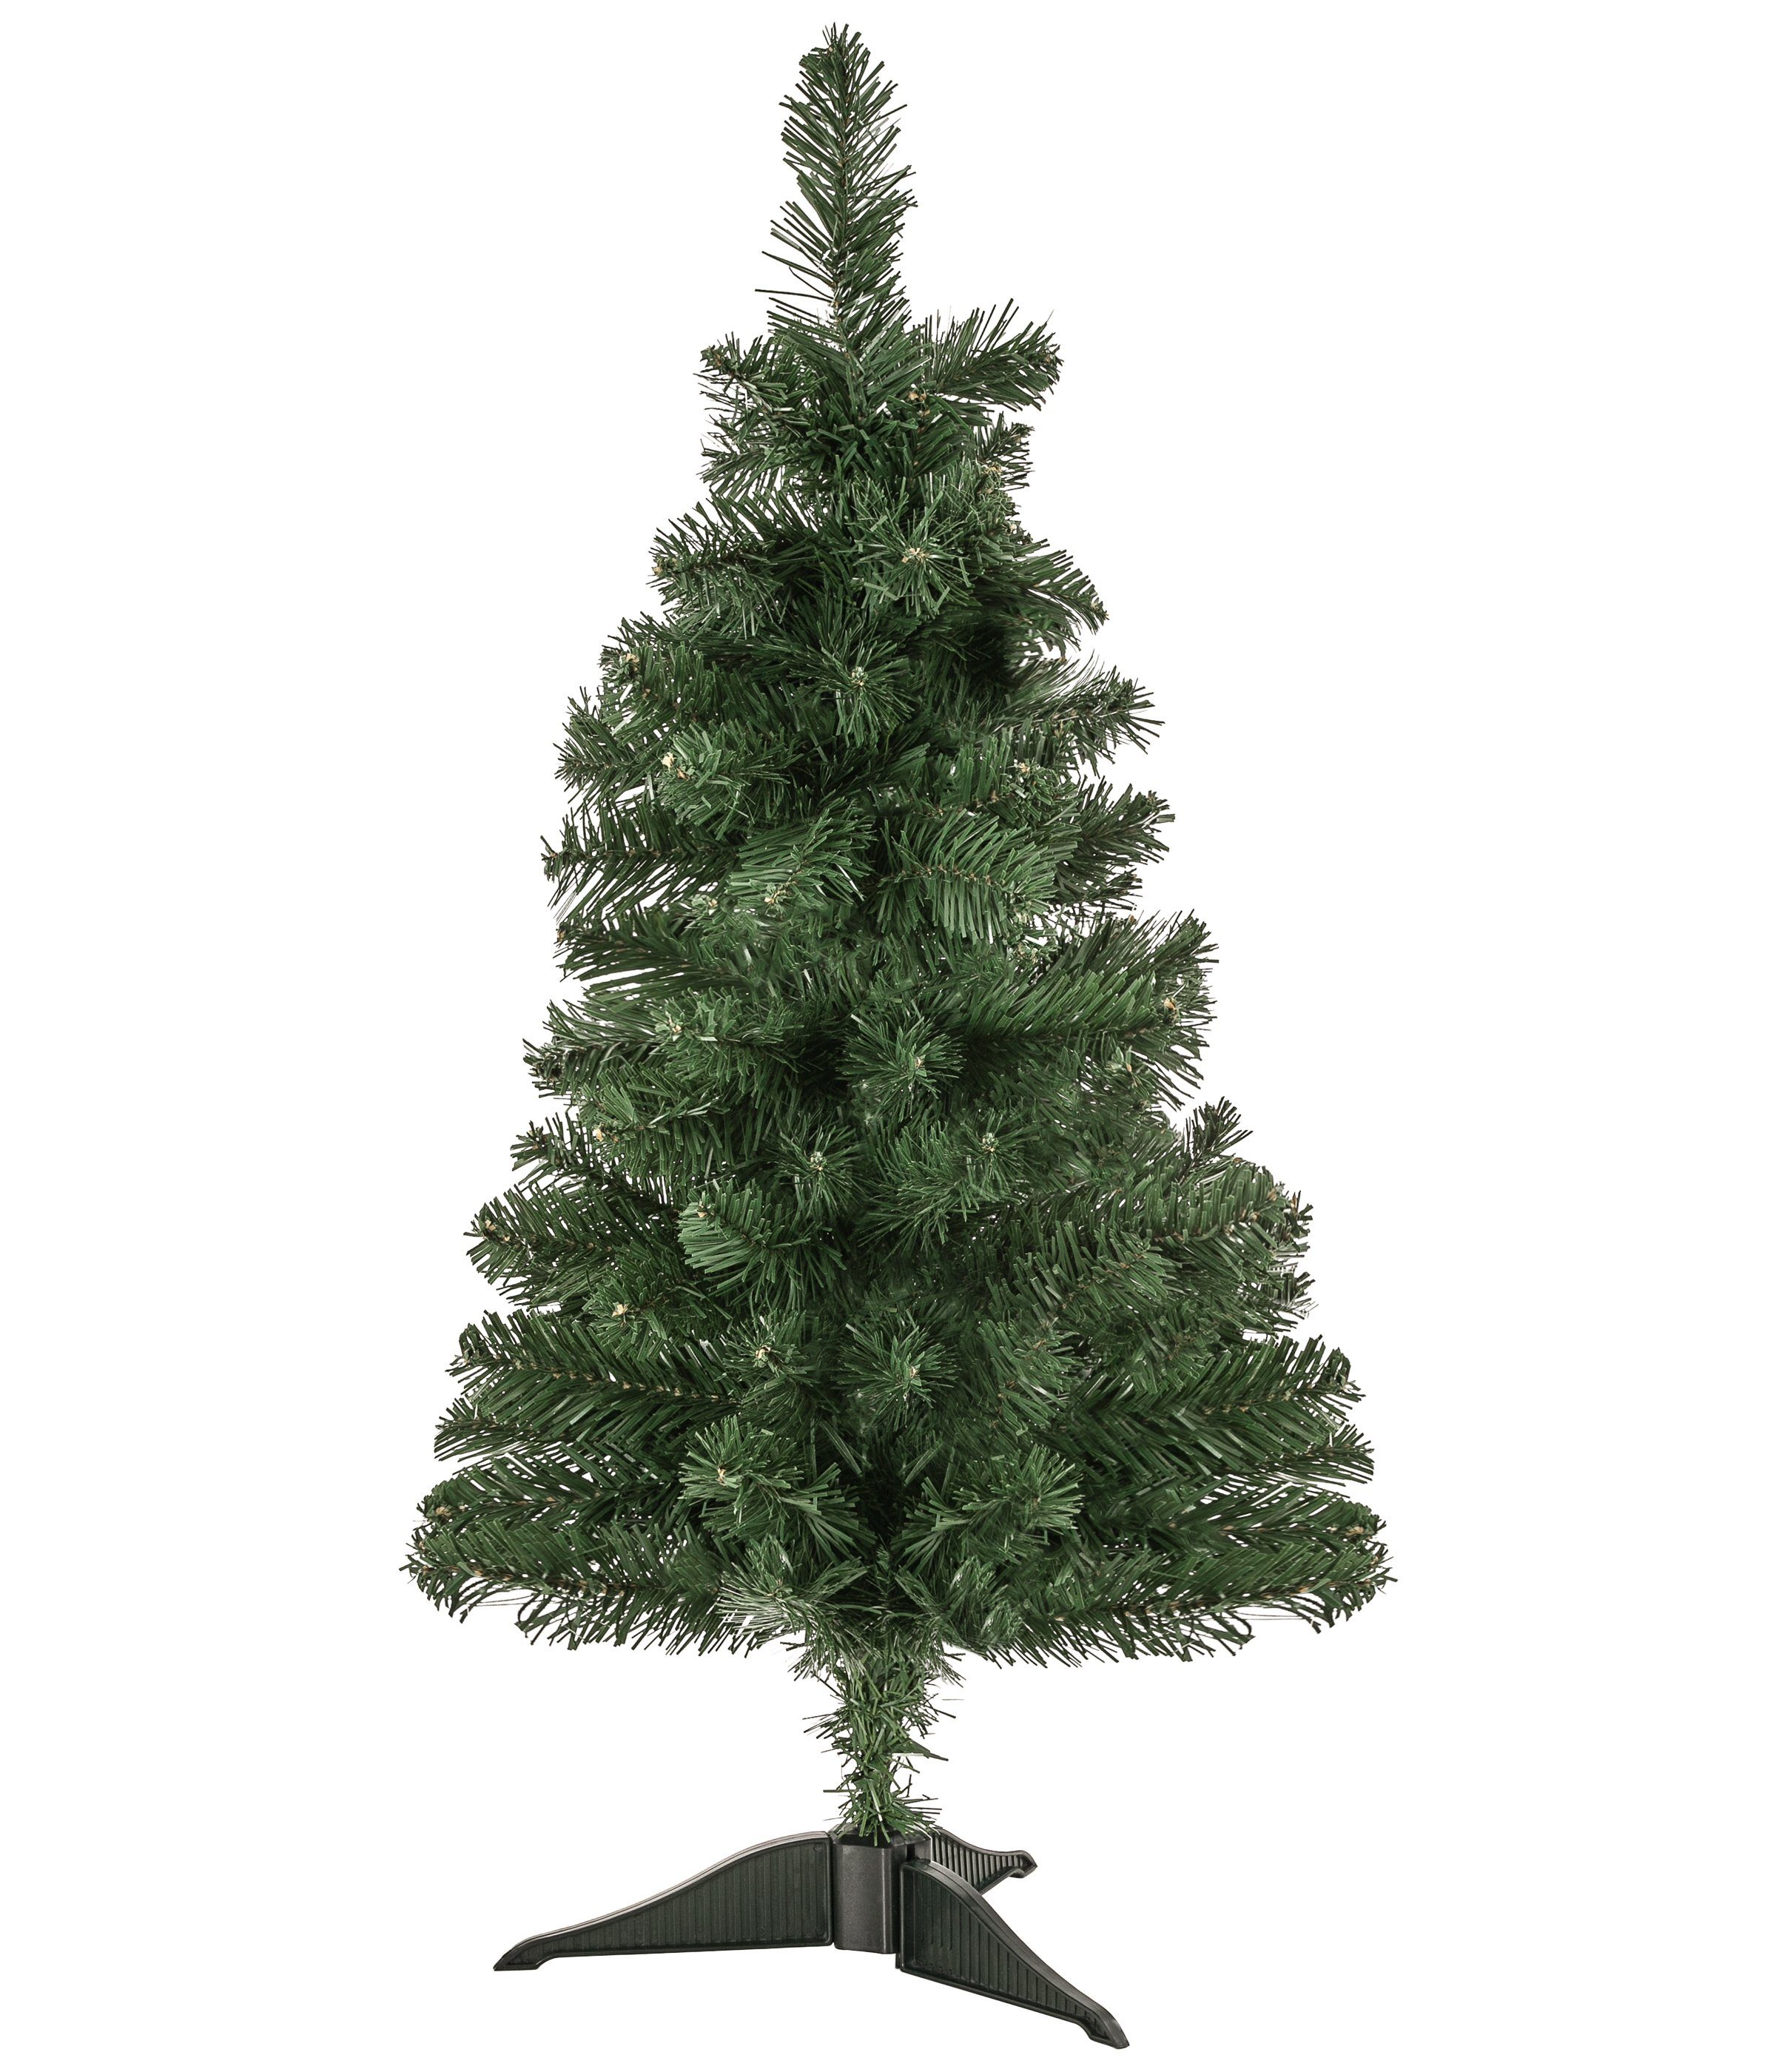 Dehner Künstlicher Weihnachtsbaum Tanne Aron mit Ständer, Höhe 90 cm, Ø 45.7 cm, Kompakt, robust, pflegeleicht, für kleine Räume